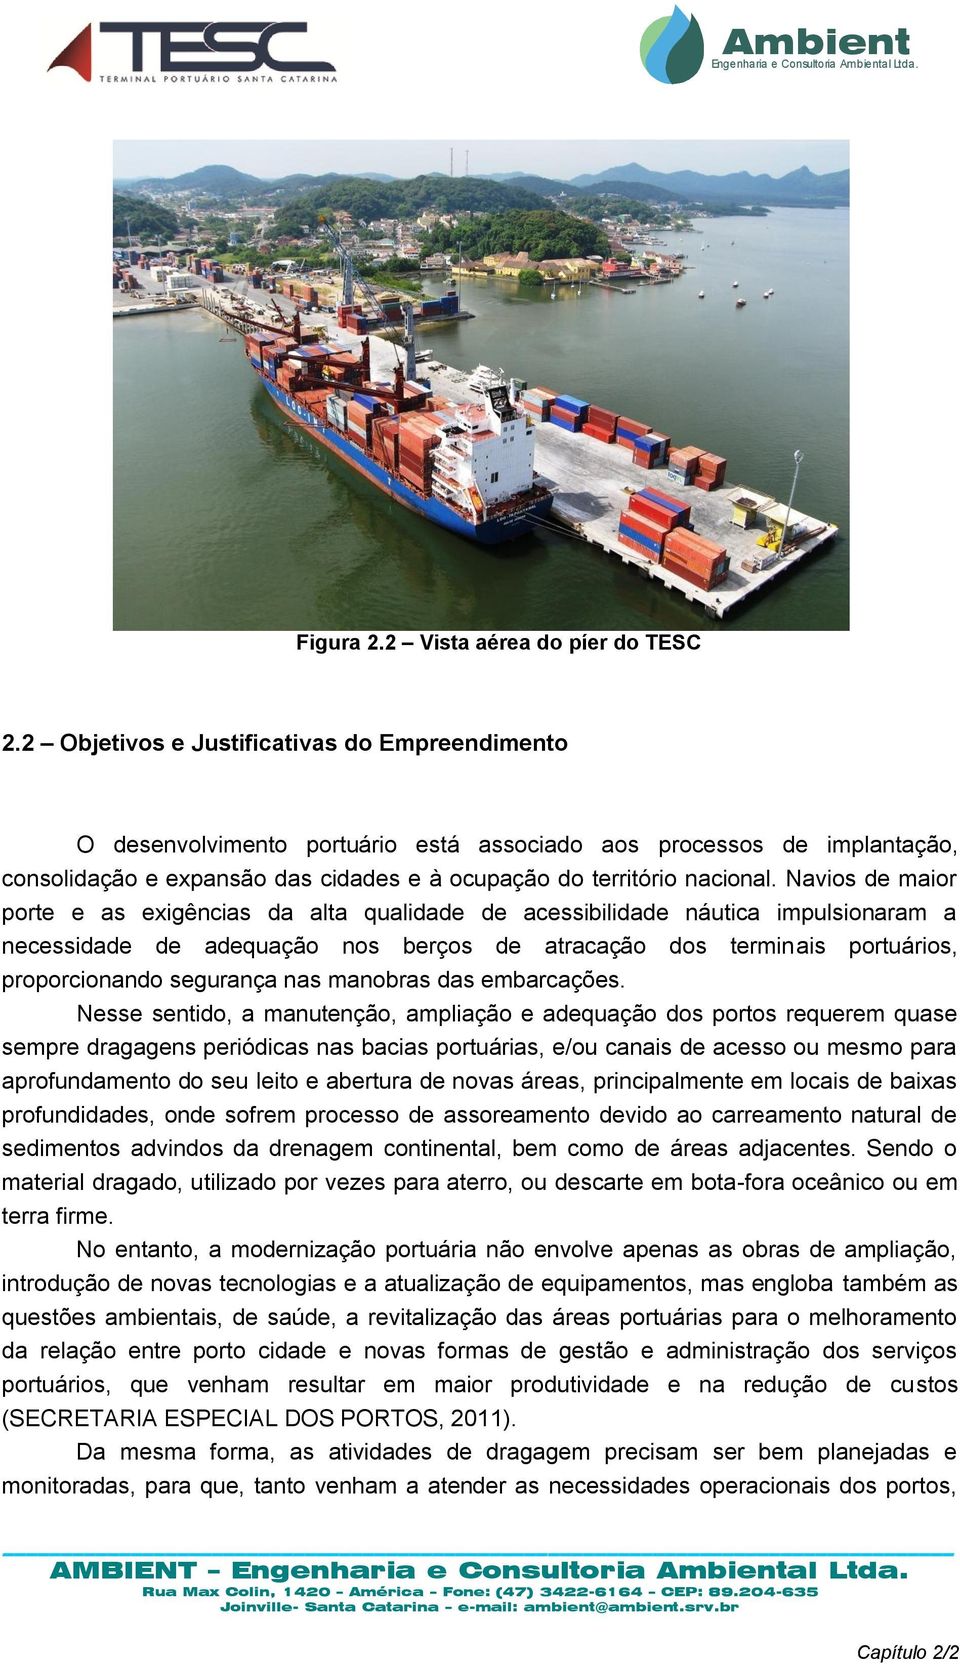 Navios de maior porte e as exigências da alta qualidade de acessibilidade náutica impulsionaram a necessidade de adequação nos berços de atracação dos terminais portuários, proporcionando segurança